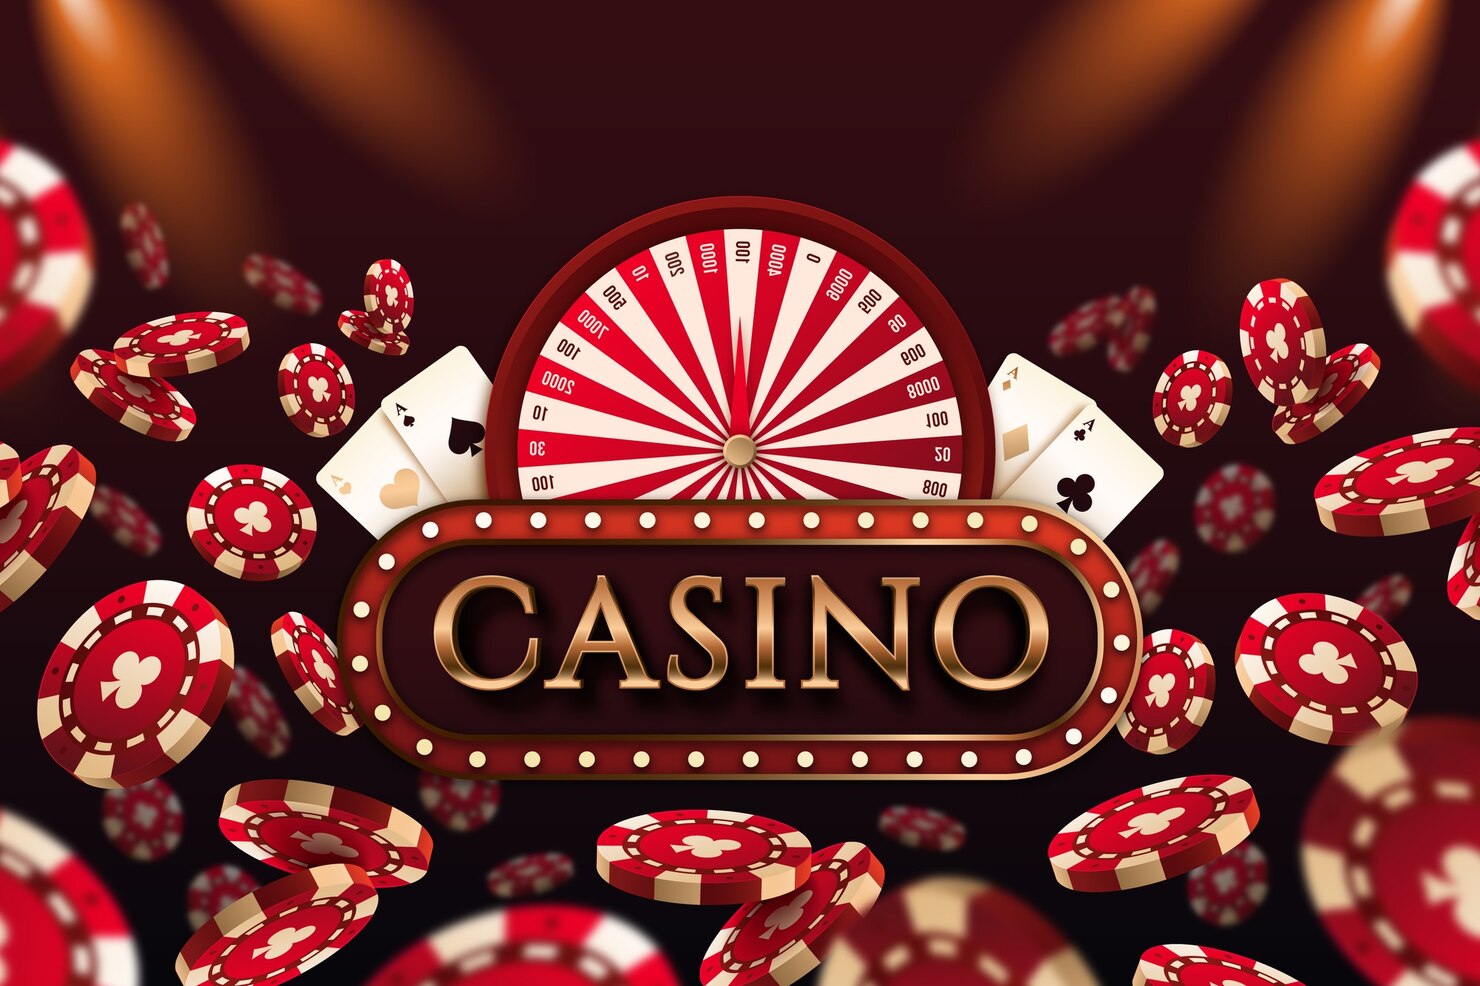 Brauchen Sie mehr Inspiration mit Online-Casinos? Lesen Sie dies!